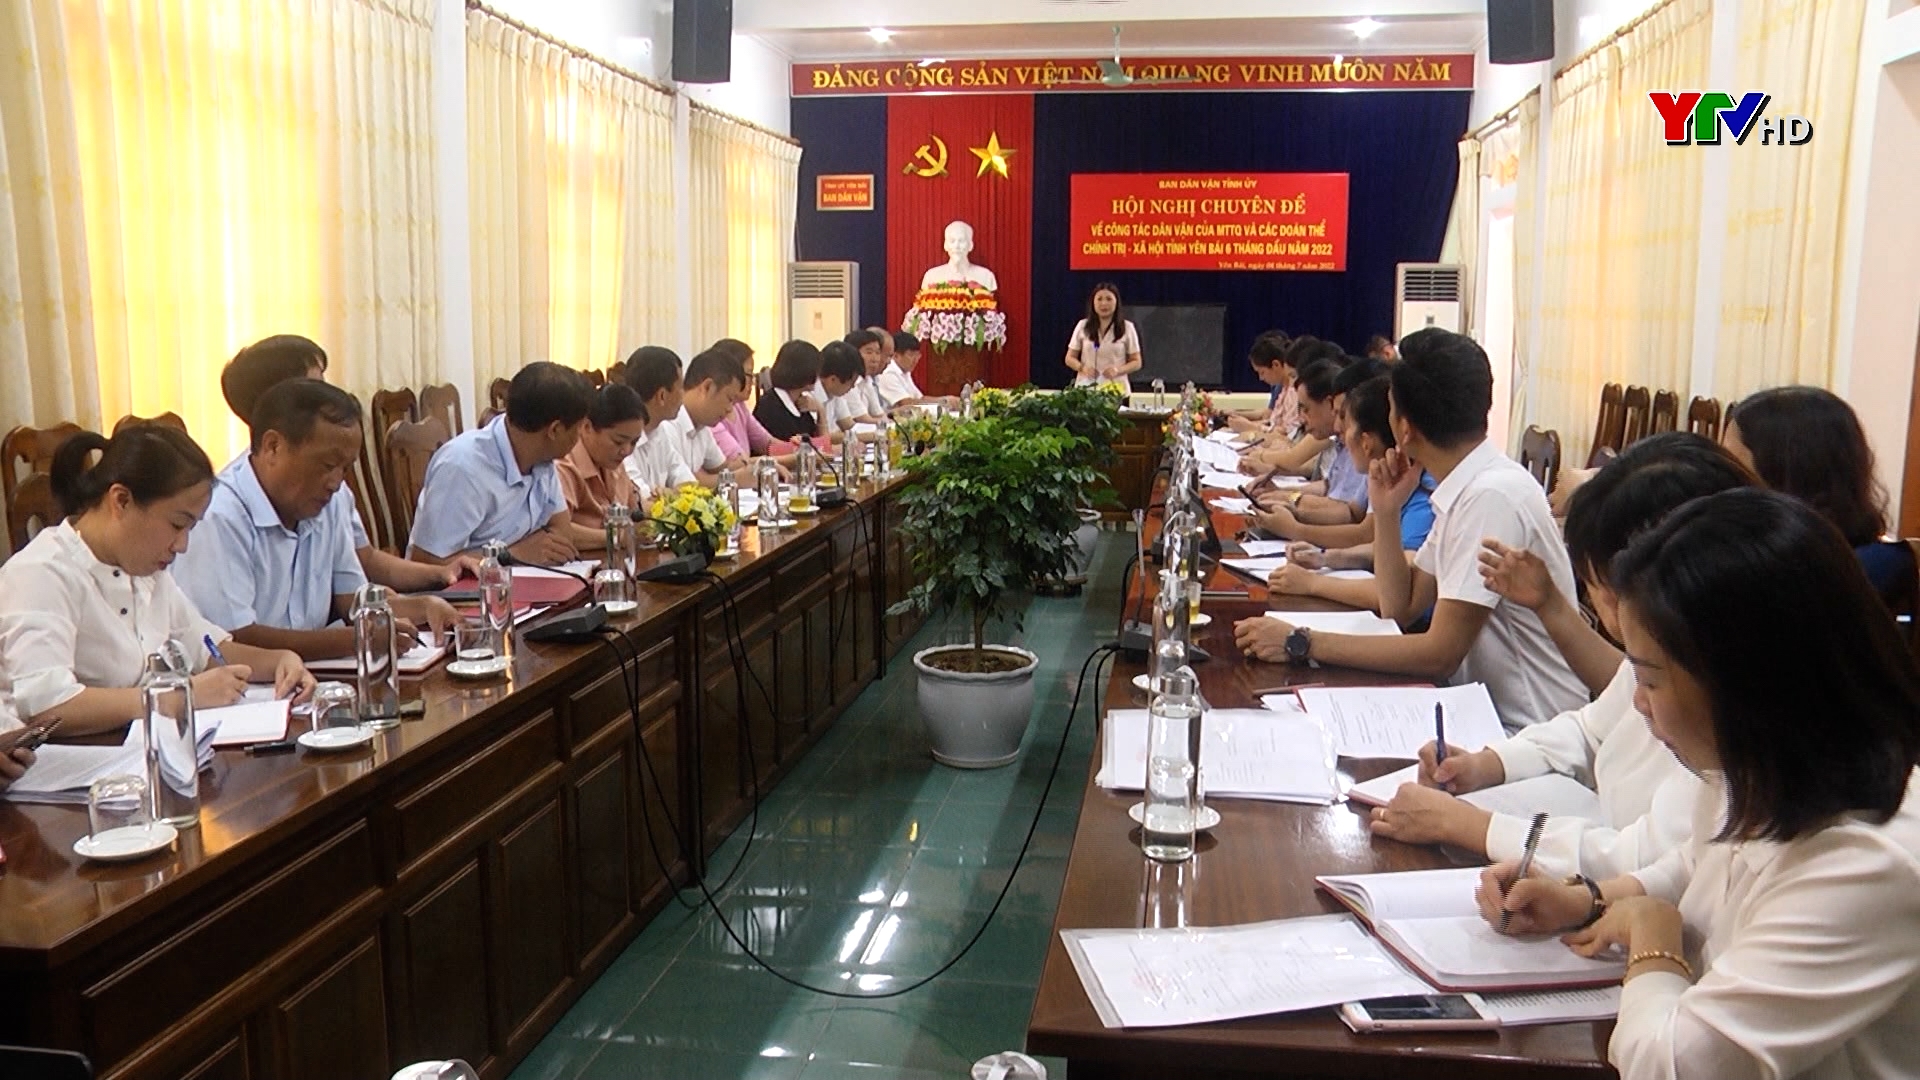 Hội nghị chuyên đề về công tác dân vận của MTTQ và các đoàn thể chính trị - xã hội tỉnh Yên Bái